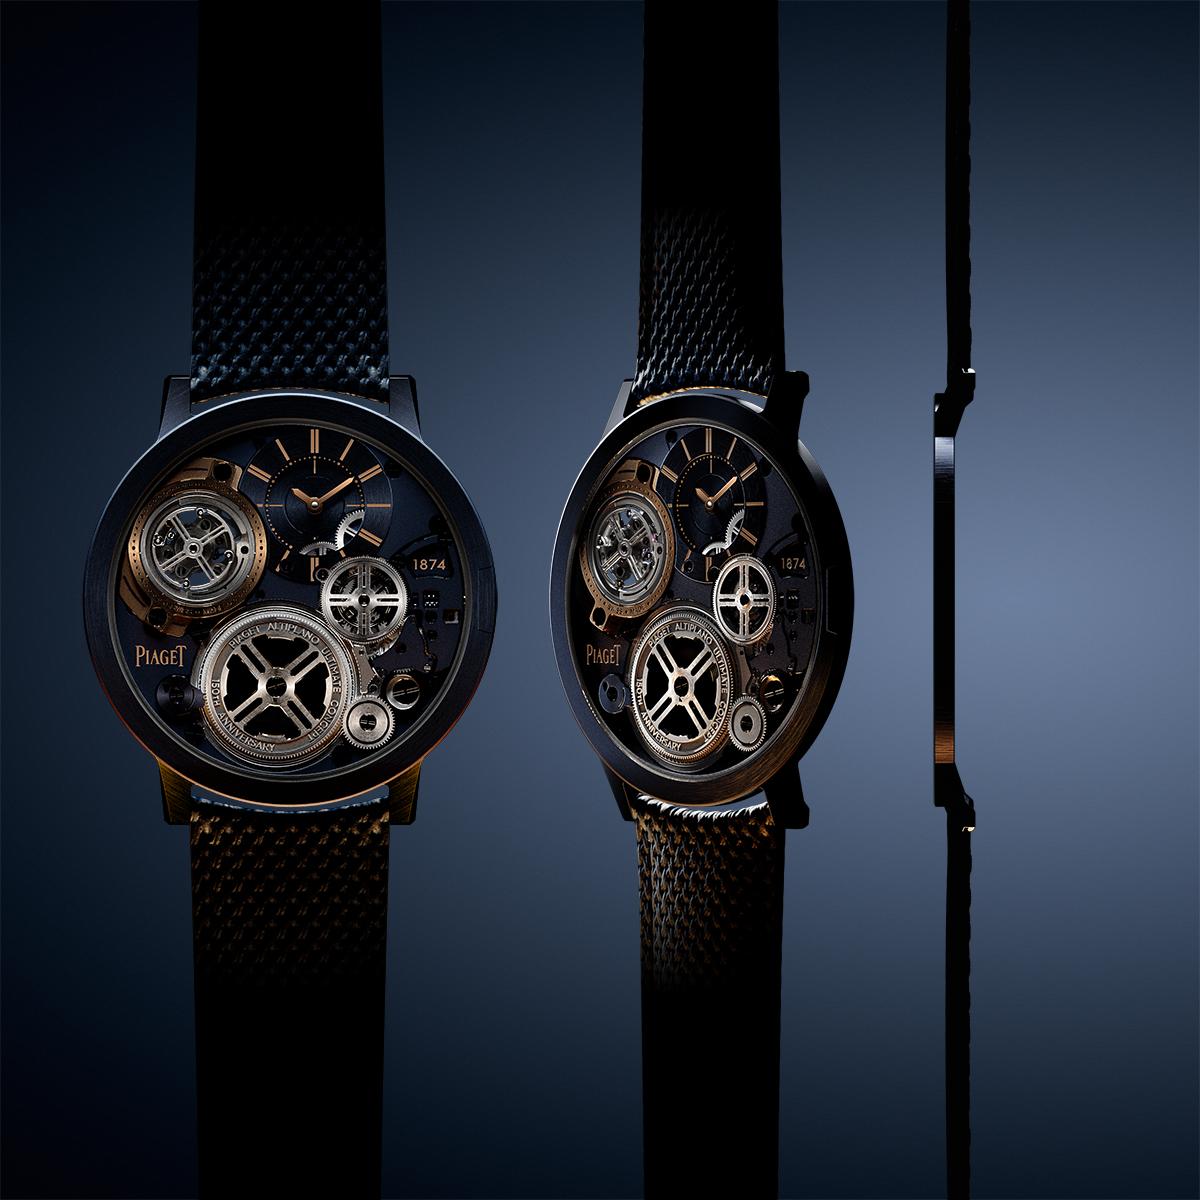 Piaget A.U.C Tourbillon: Giới hạn nào cho đồng hồ đeo tay? 17